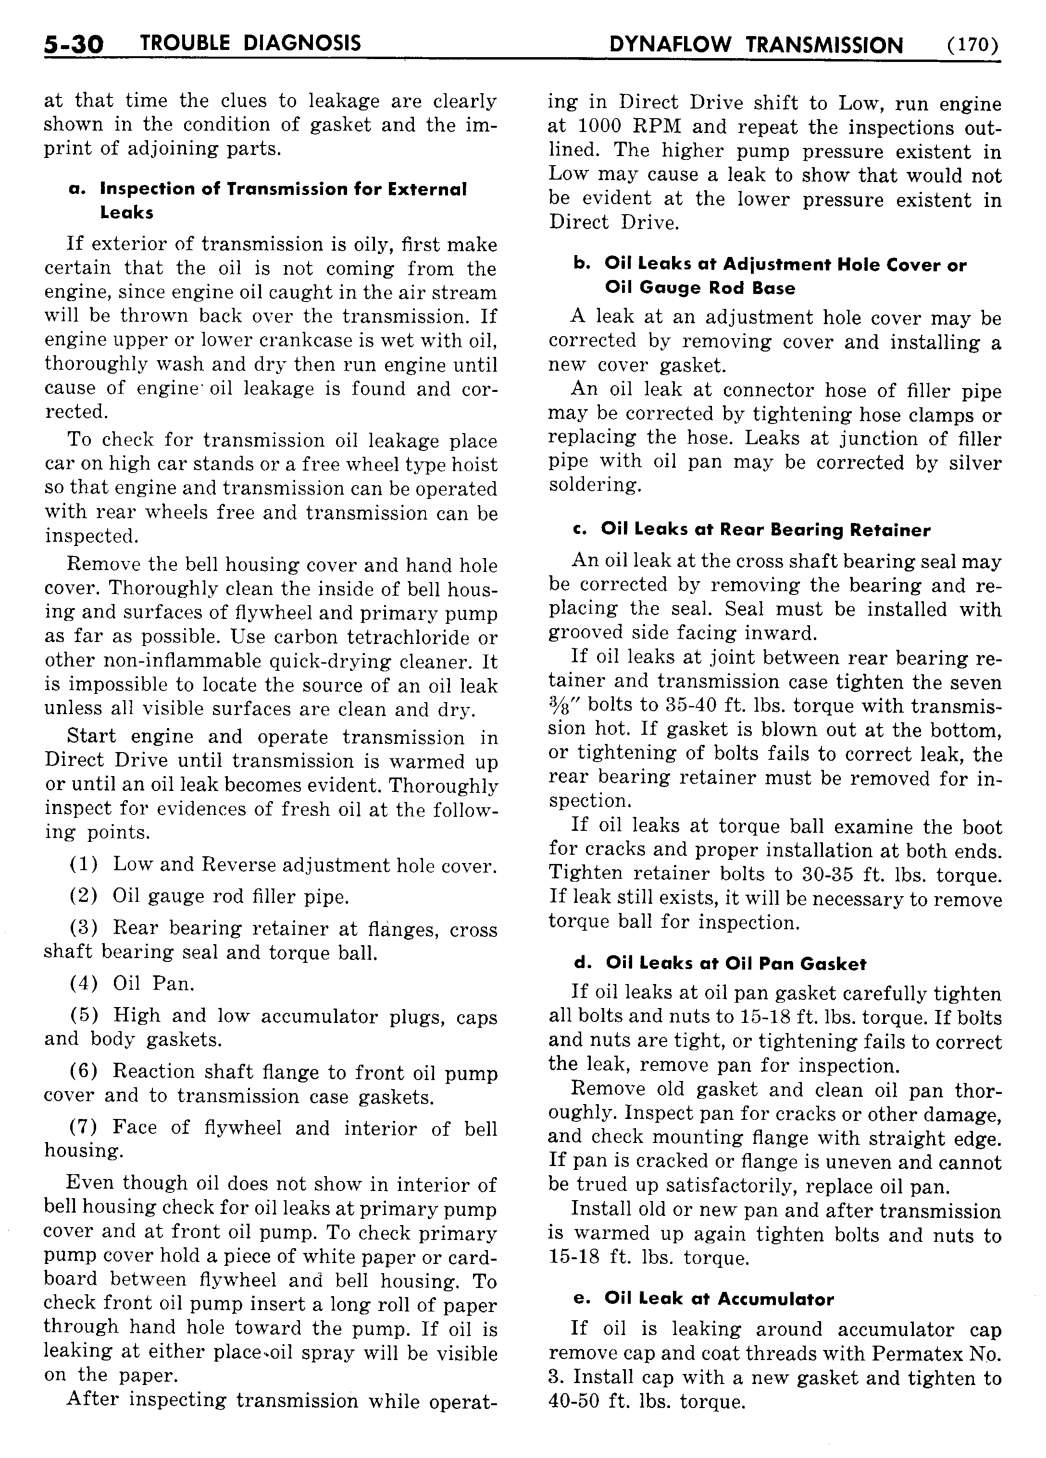 n_06 1955 Buick Shop Manual - Dynaflow-030-030.jpg